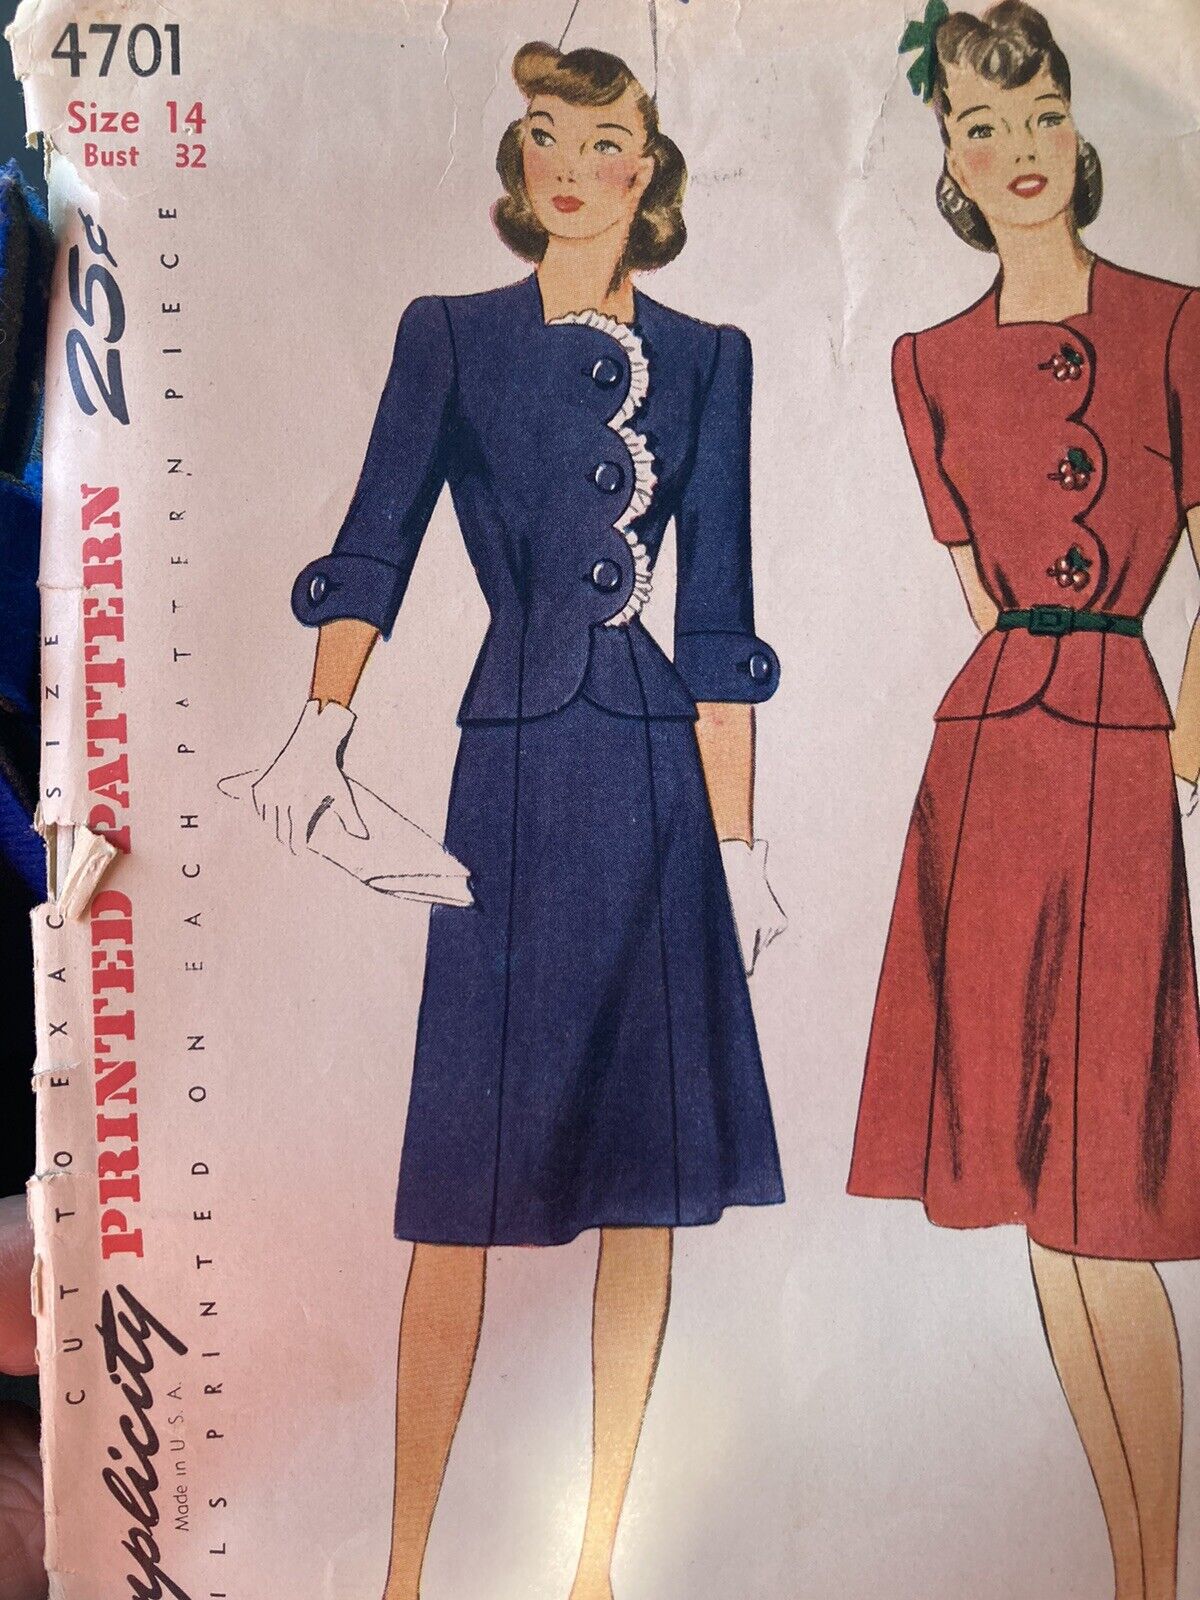 Vintage 1940s Scallop Front Two-Piece Dress Pattern - 4701 - Bust 32. Vint Sz 14